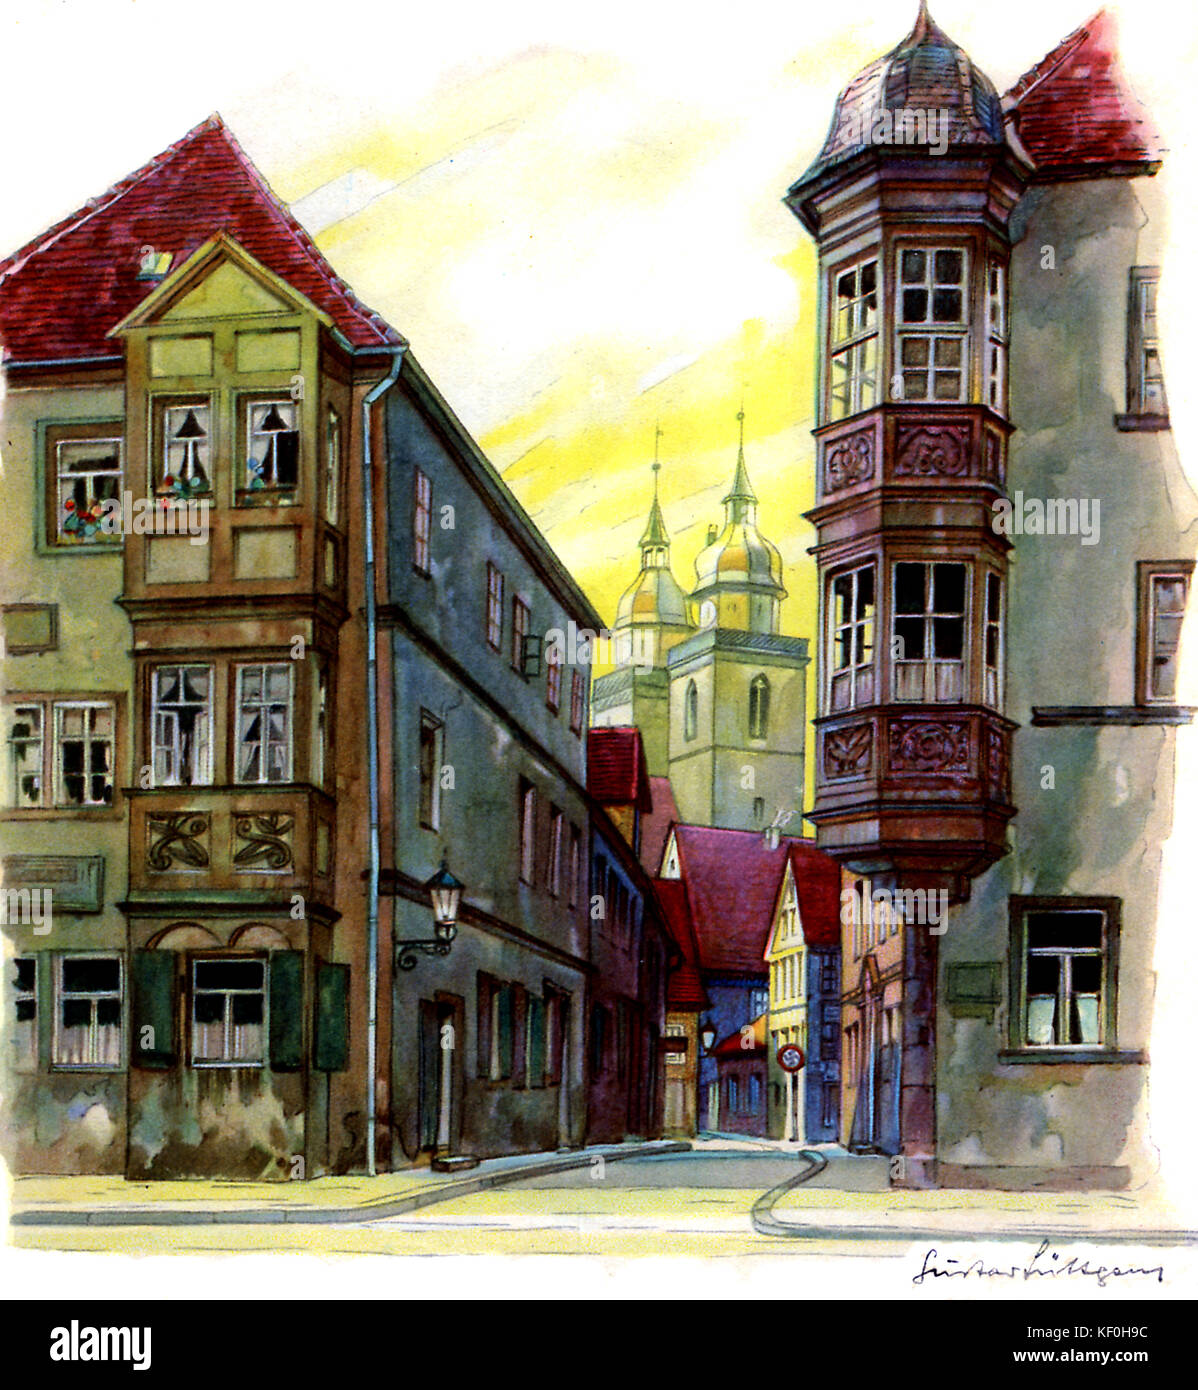 La ville de Bayreuth : vue pittoresque en 1938 brochure touristique publié pendant le Troisième Reich. Banque D'Images